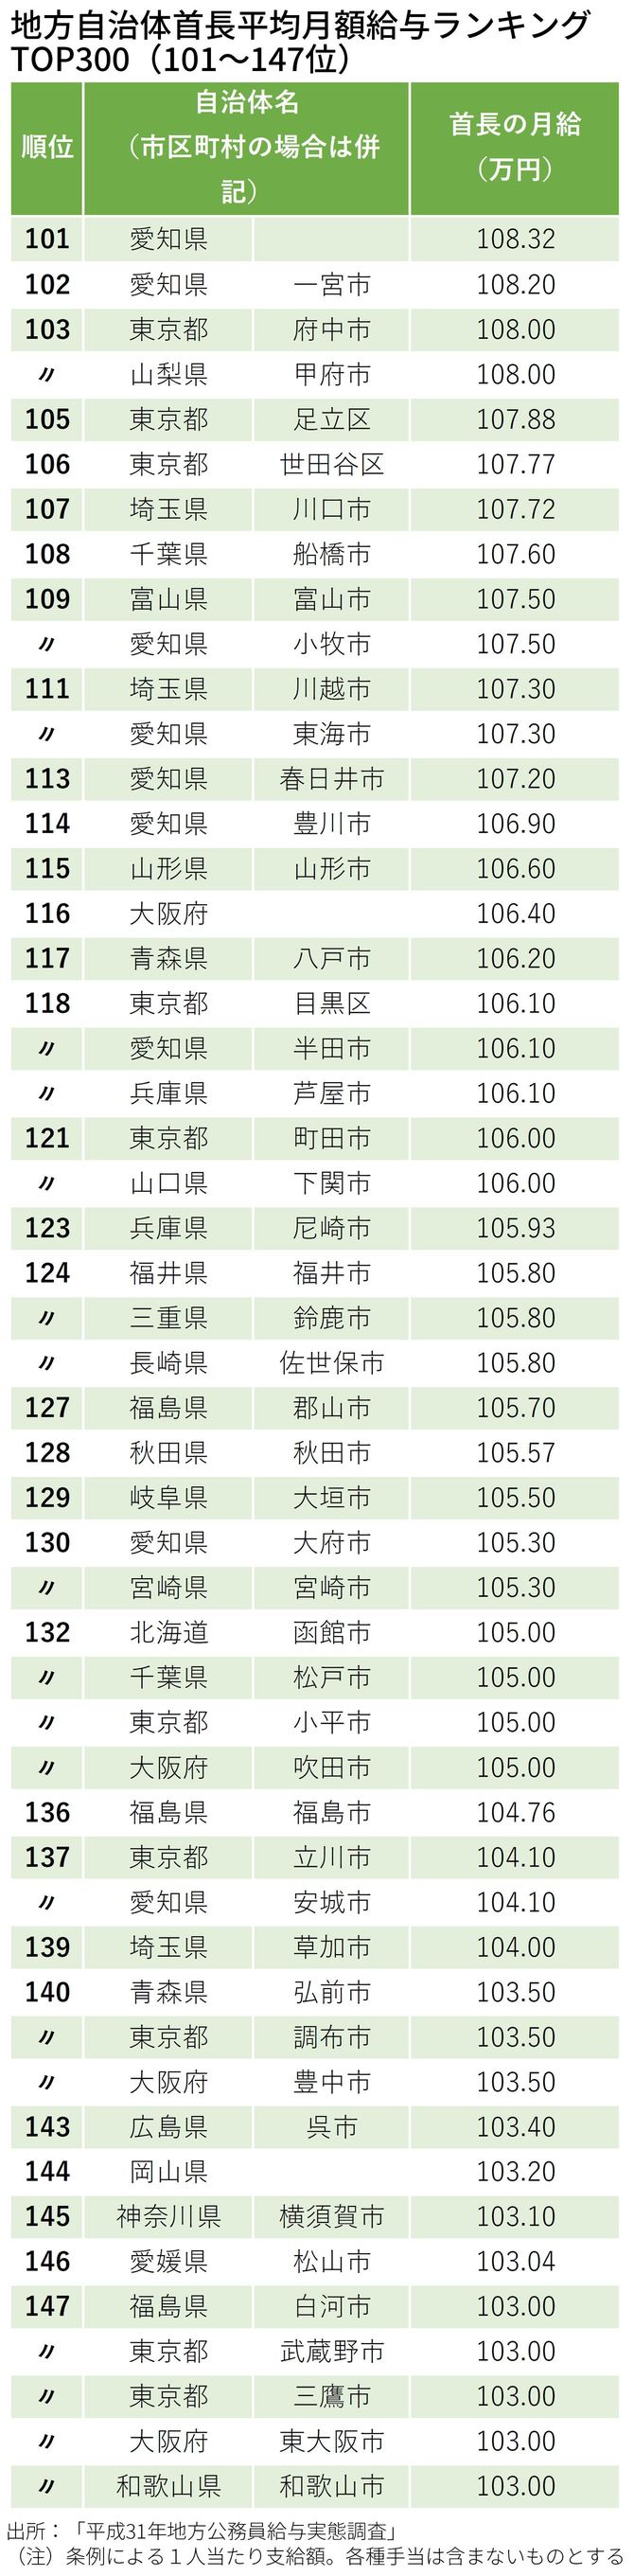 地方自治体首長平均月額給与ランキング TOP300（101～147位）